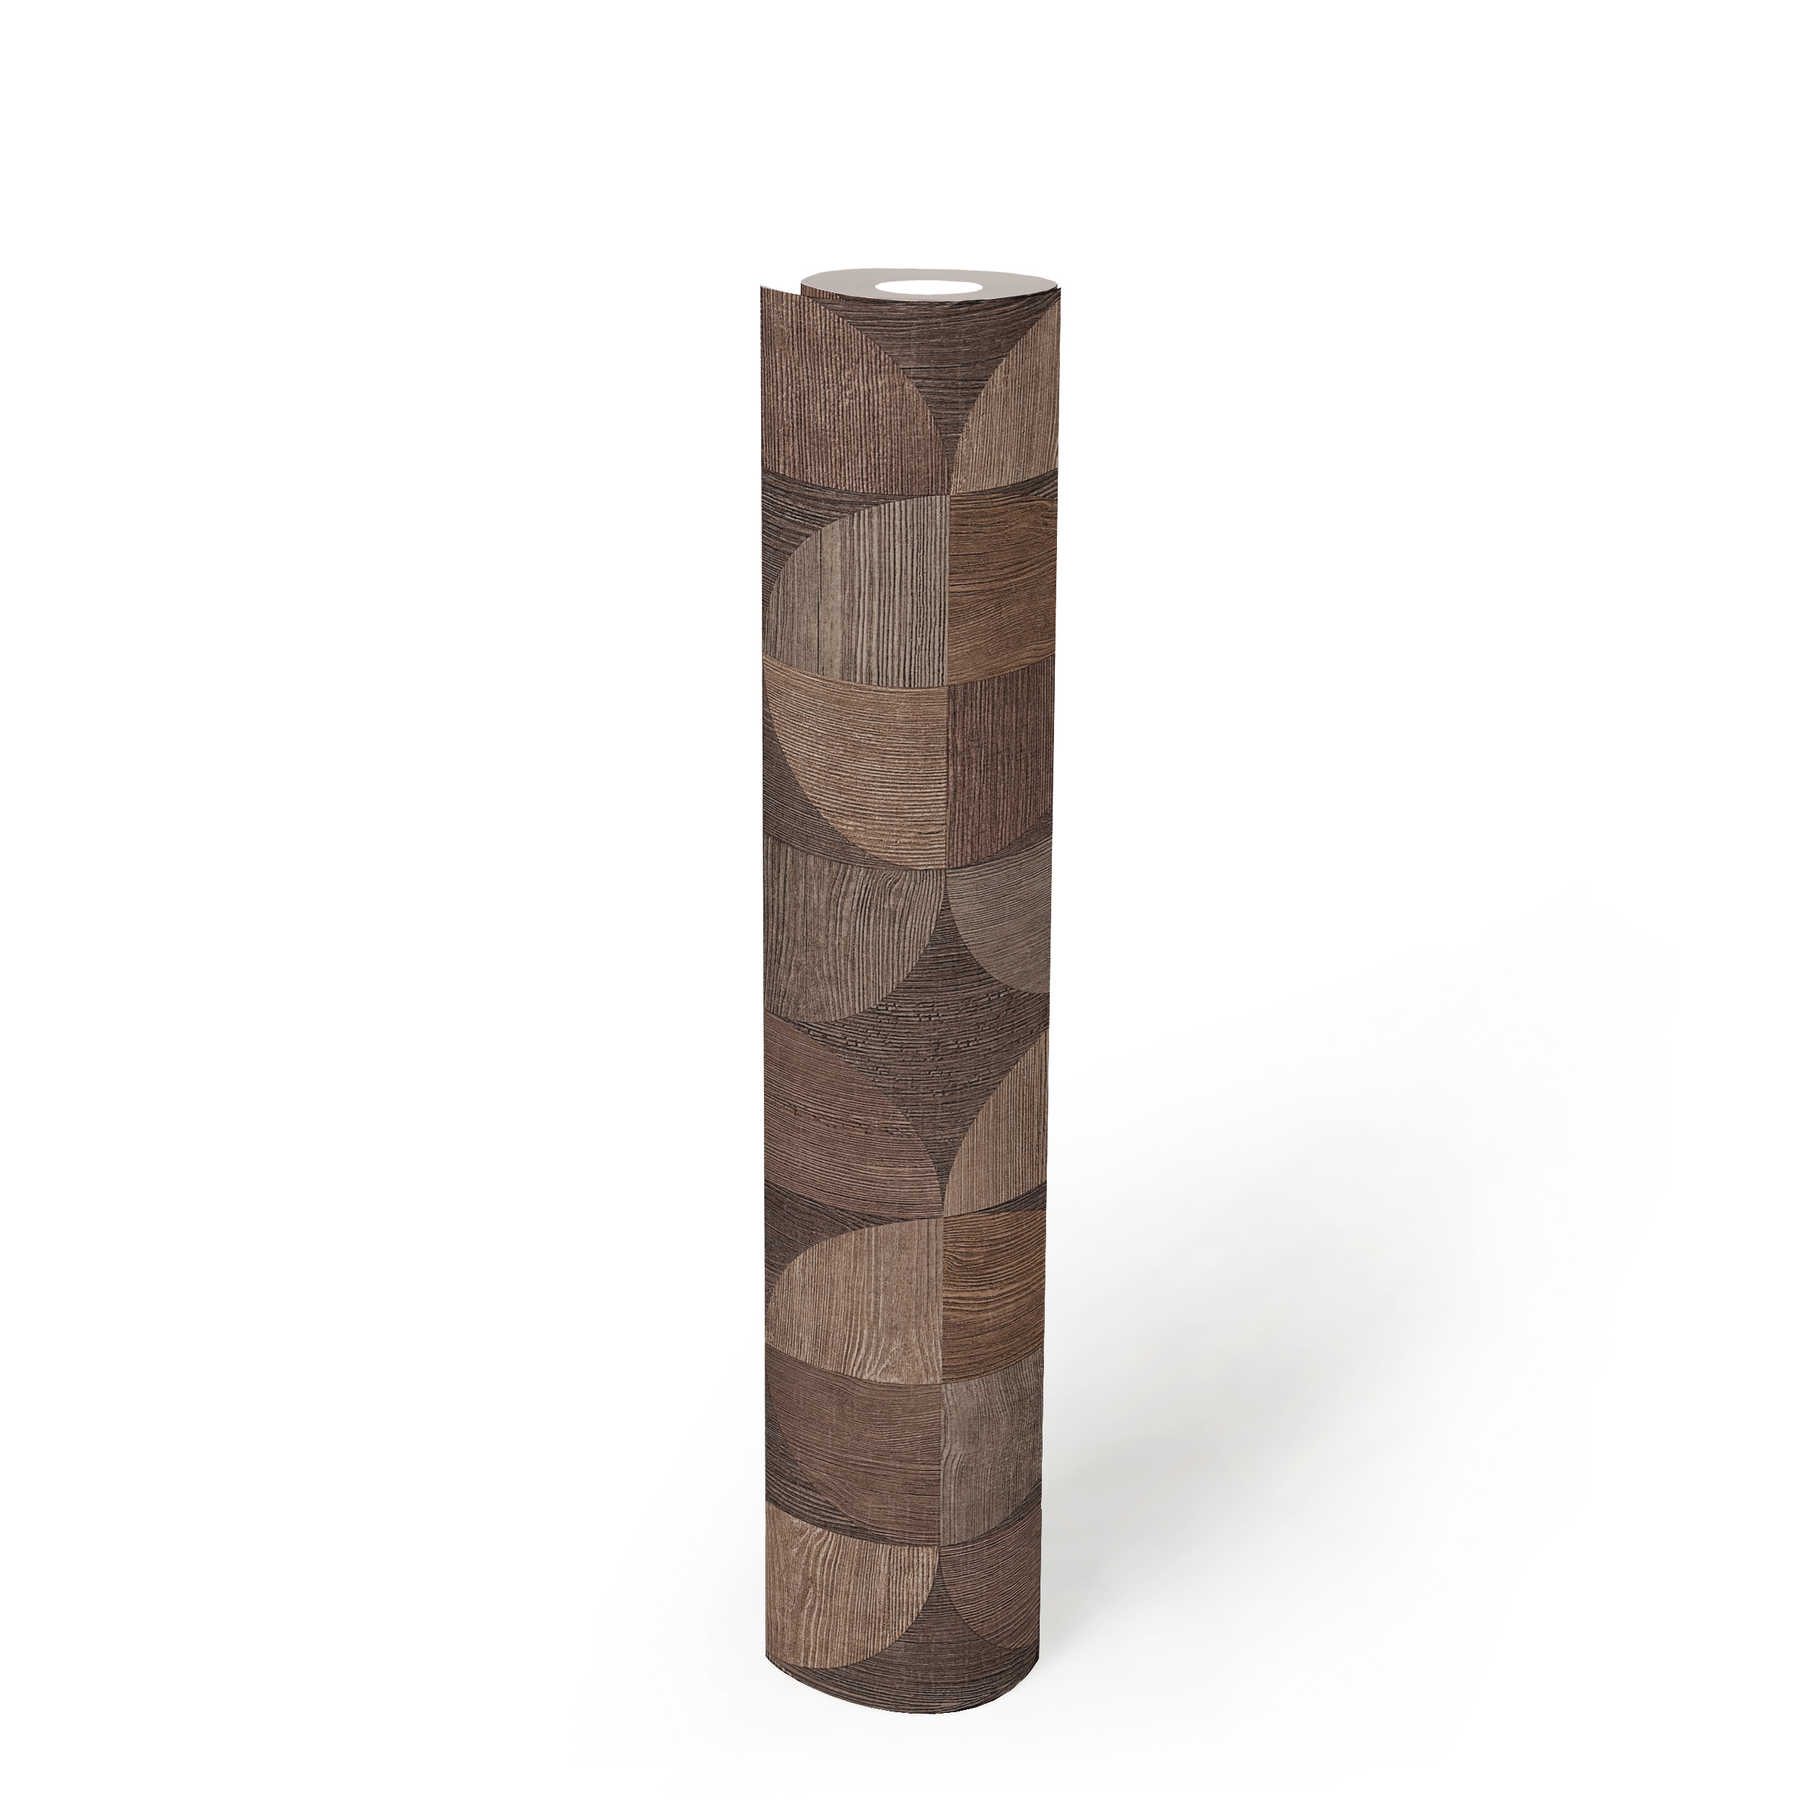             Tapete mit grafischem Muster in Holzoptik – Braun, Beige, Grau
        